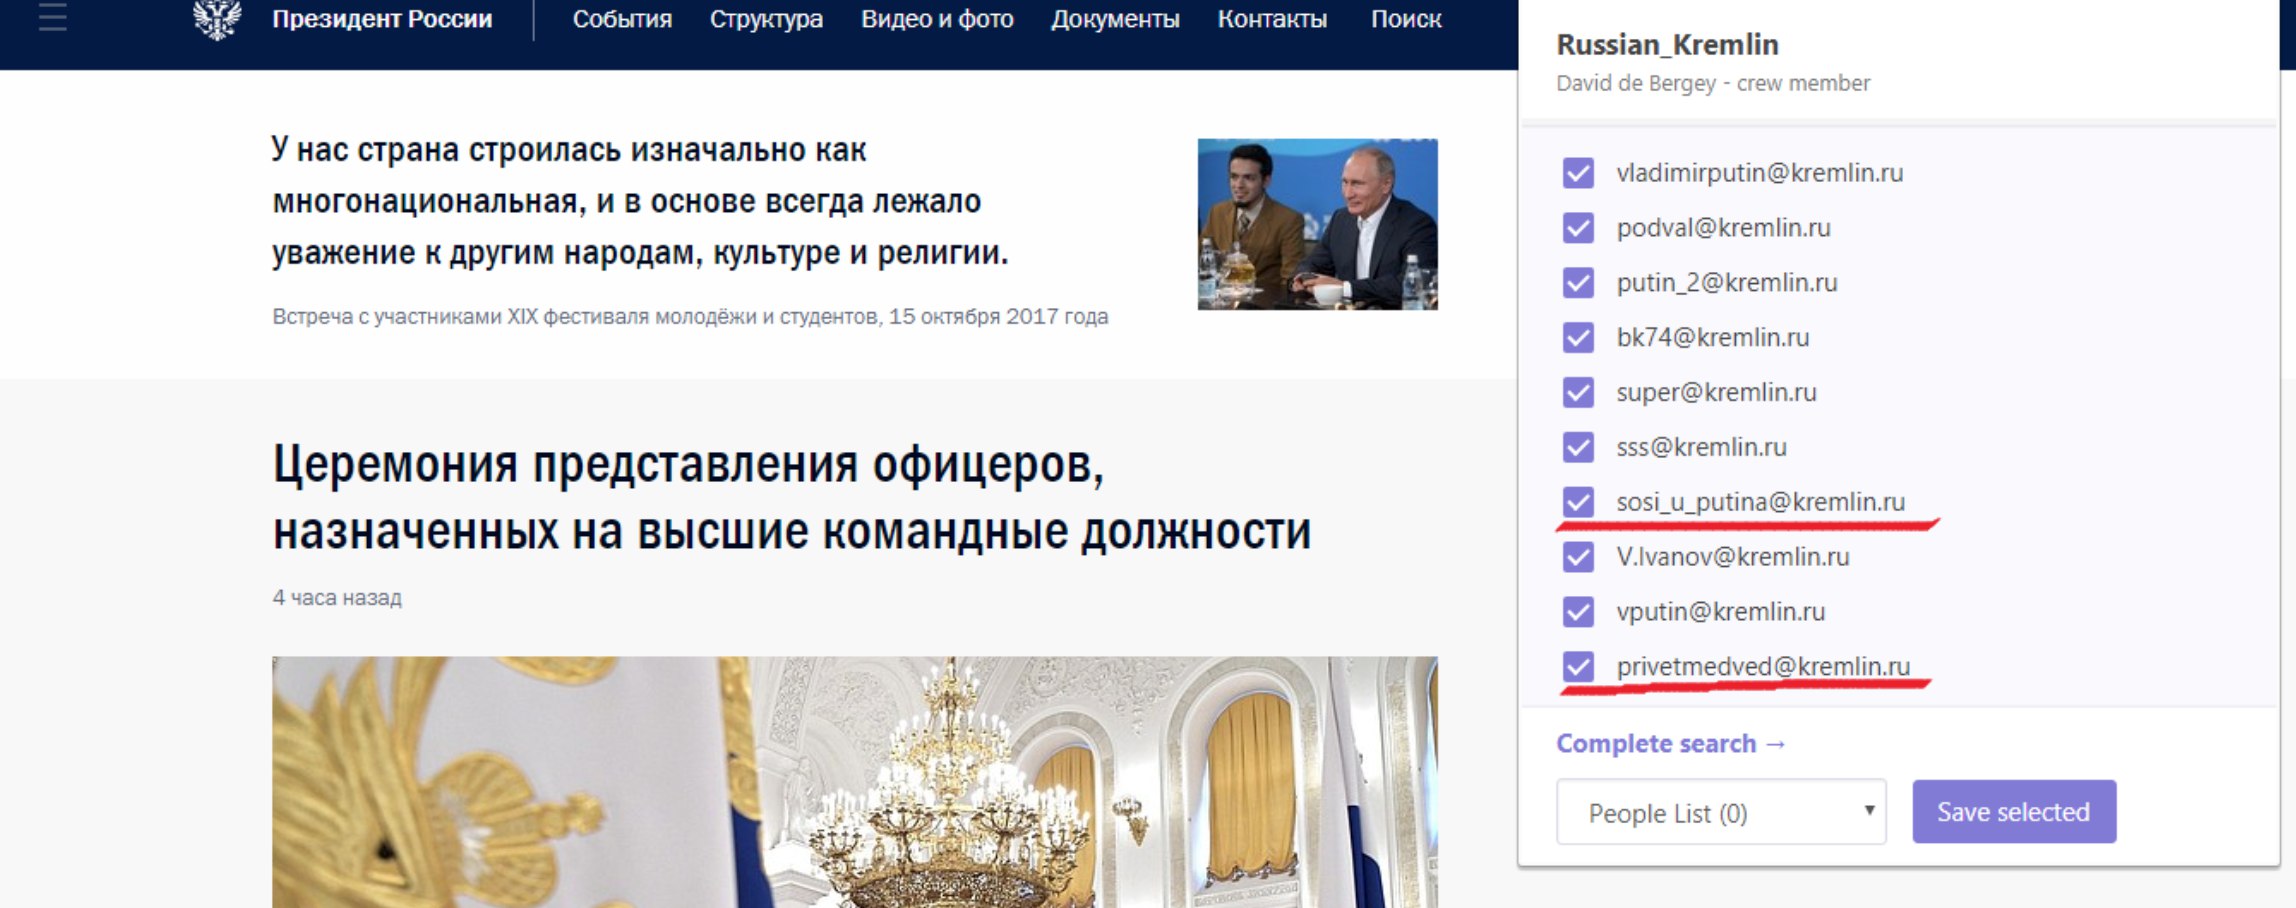 Сайт президента рф назначения. Кремлин ру.